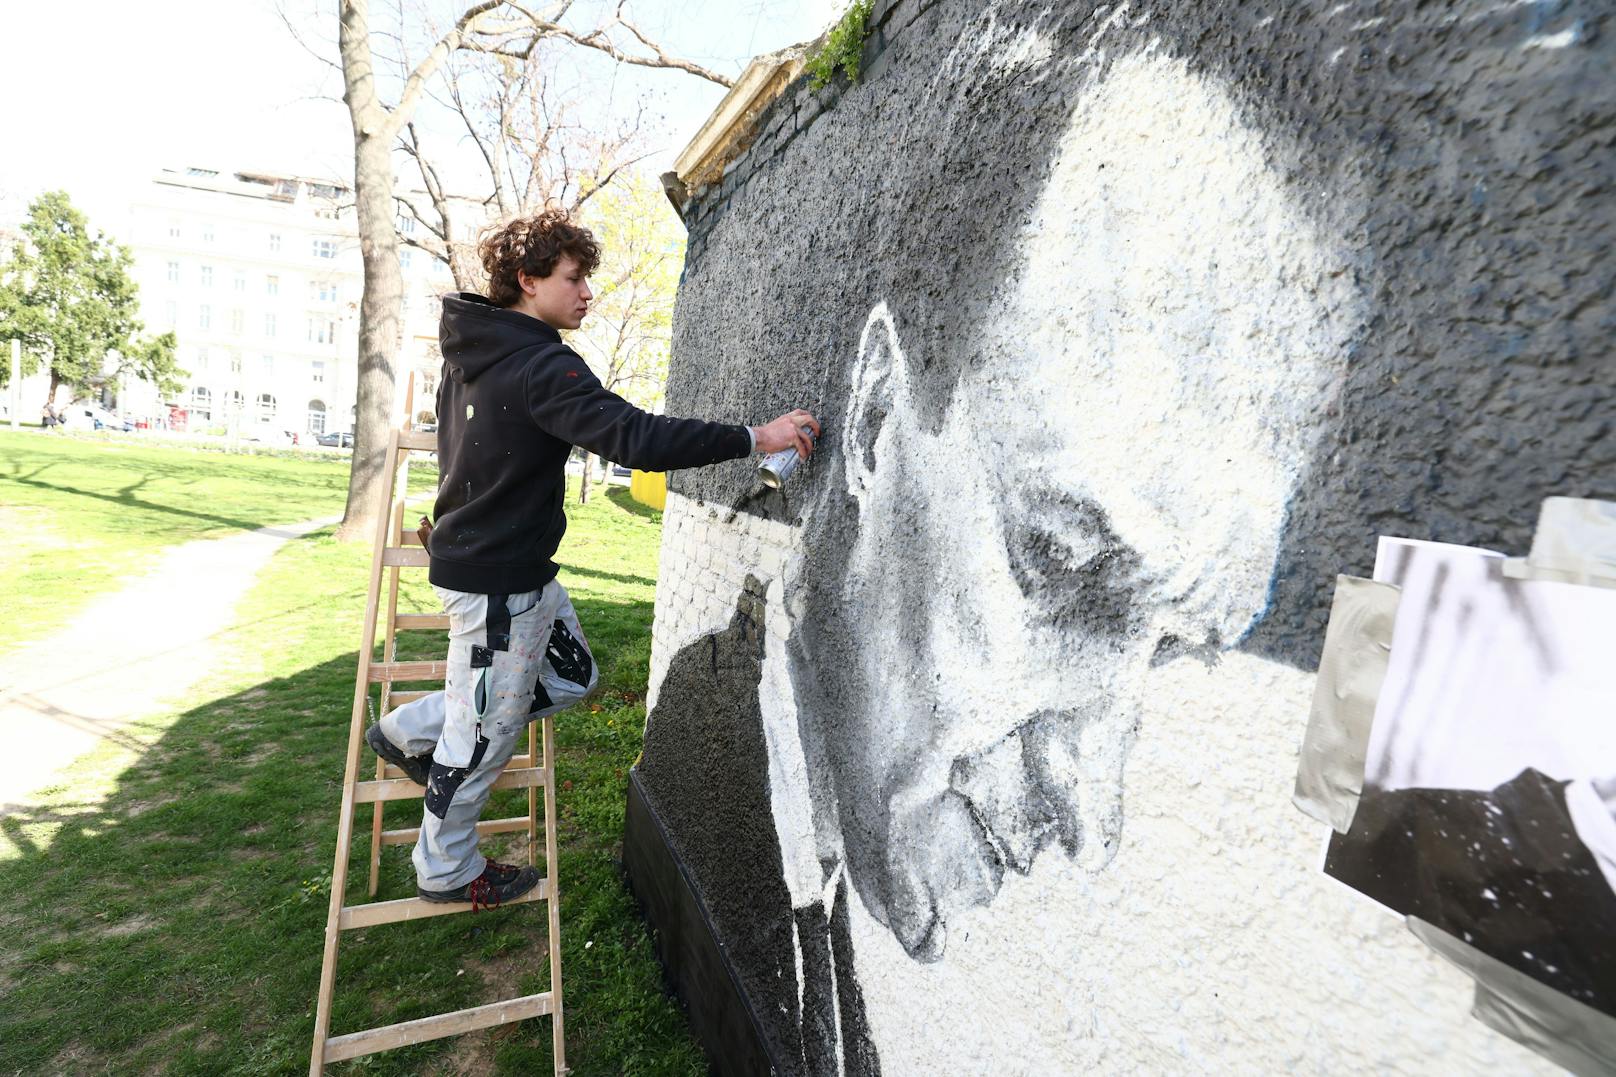 Das österreichische Graffitikünstlerduo Joel Gamnou gestaltete im Auftrag der Schwarzenberg'schen Stiftung zwei Porträts des russischen Oppositionsführers Alexej Nawalny.